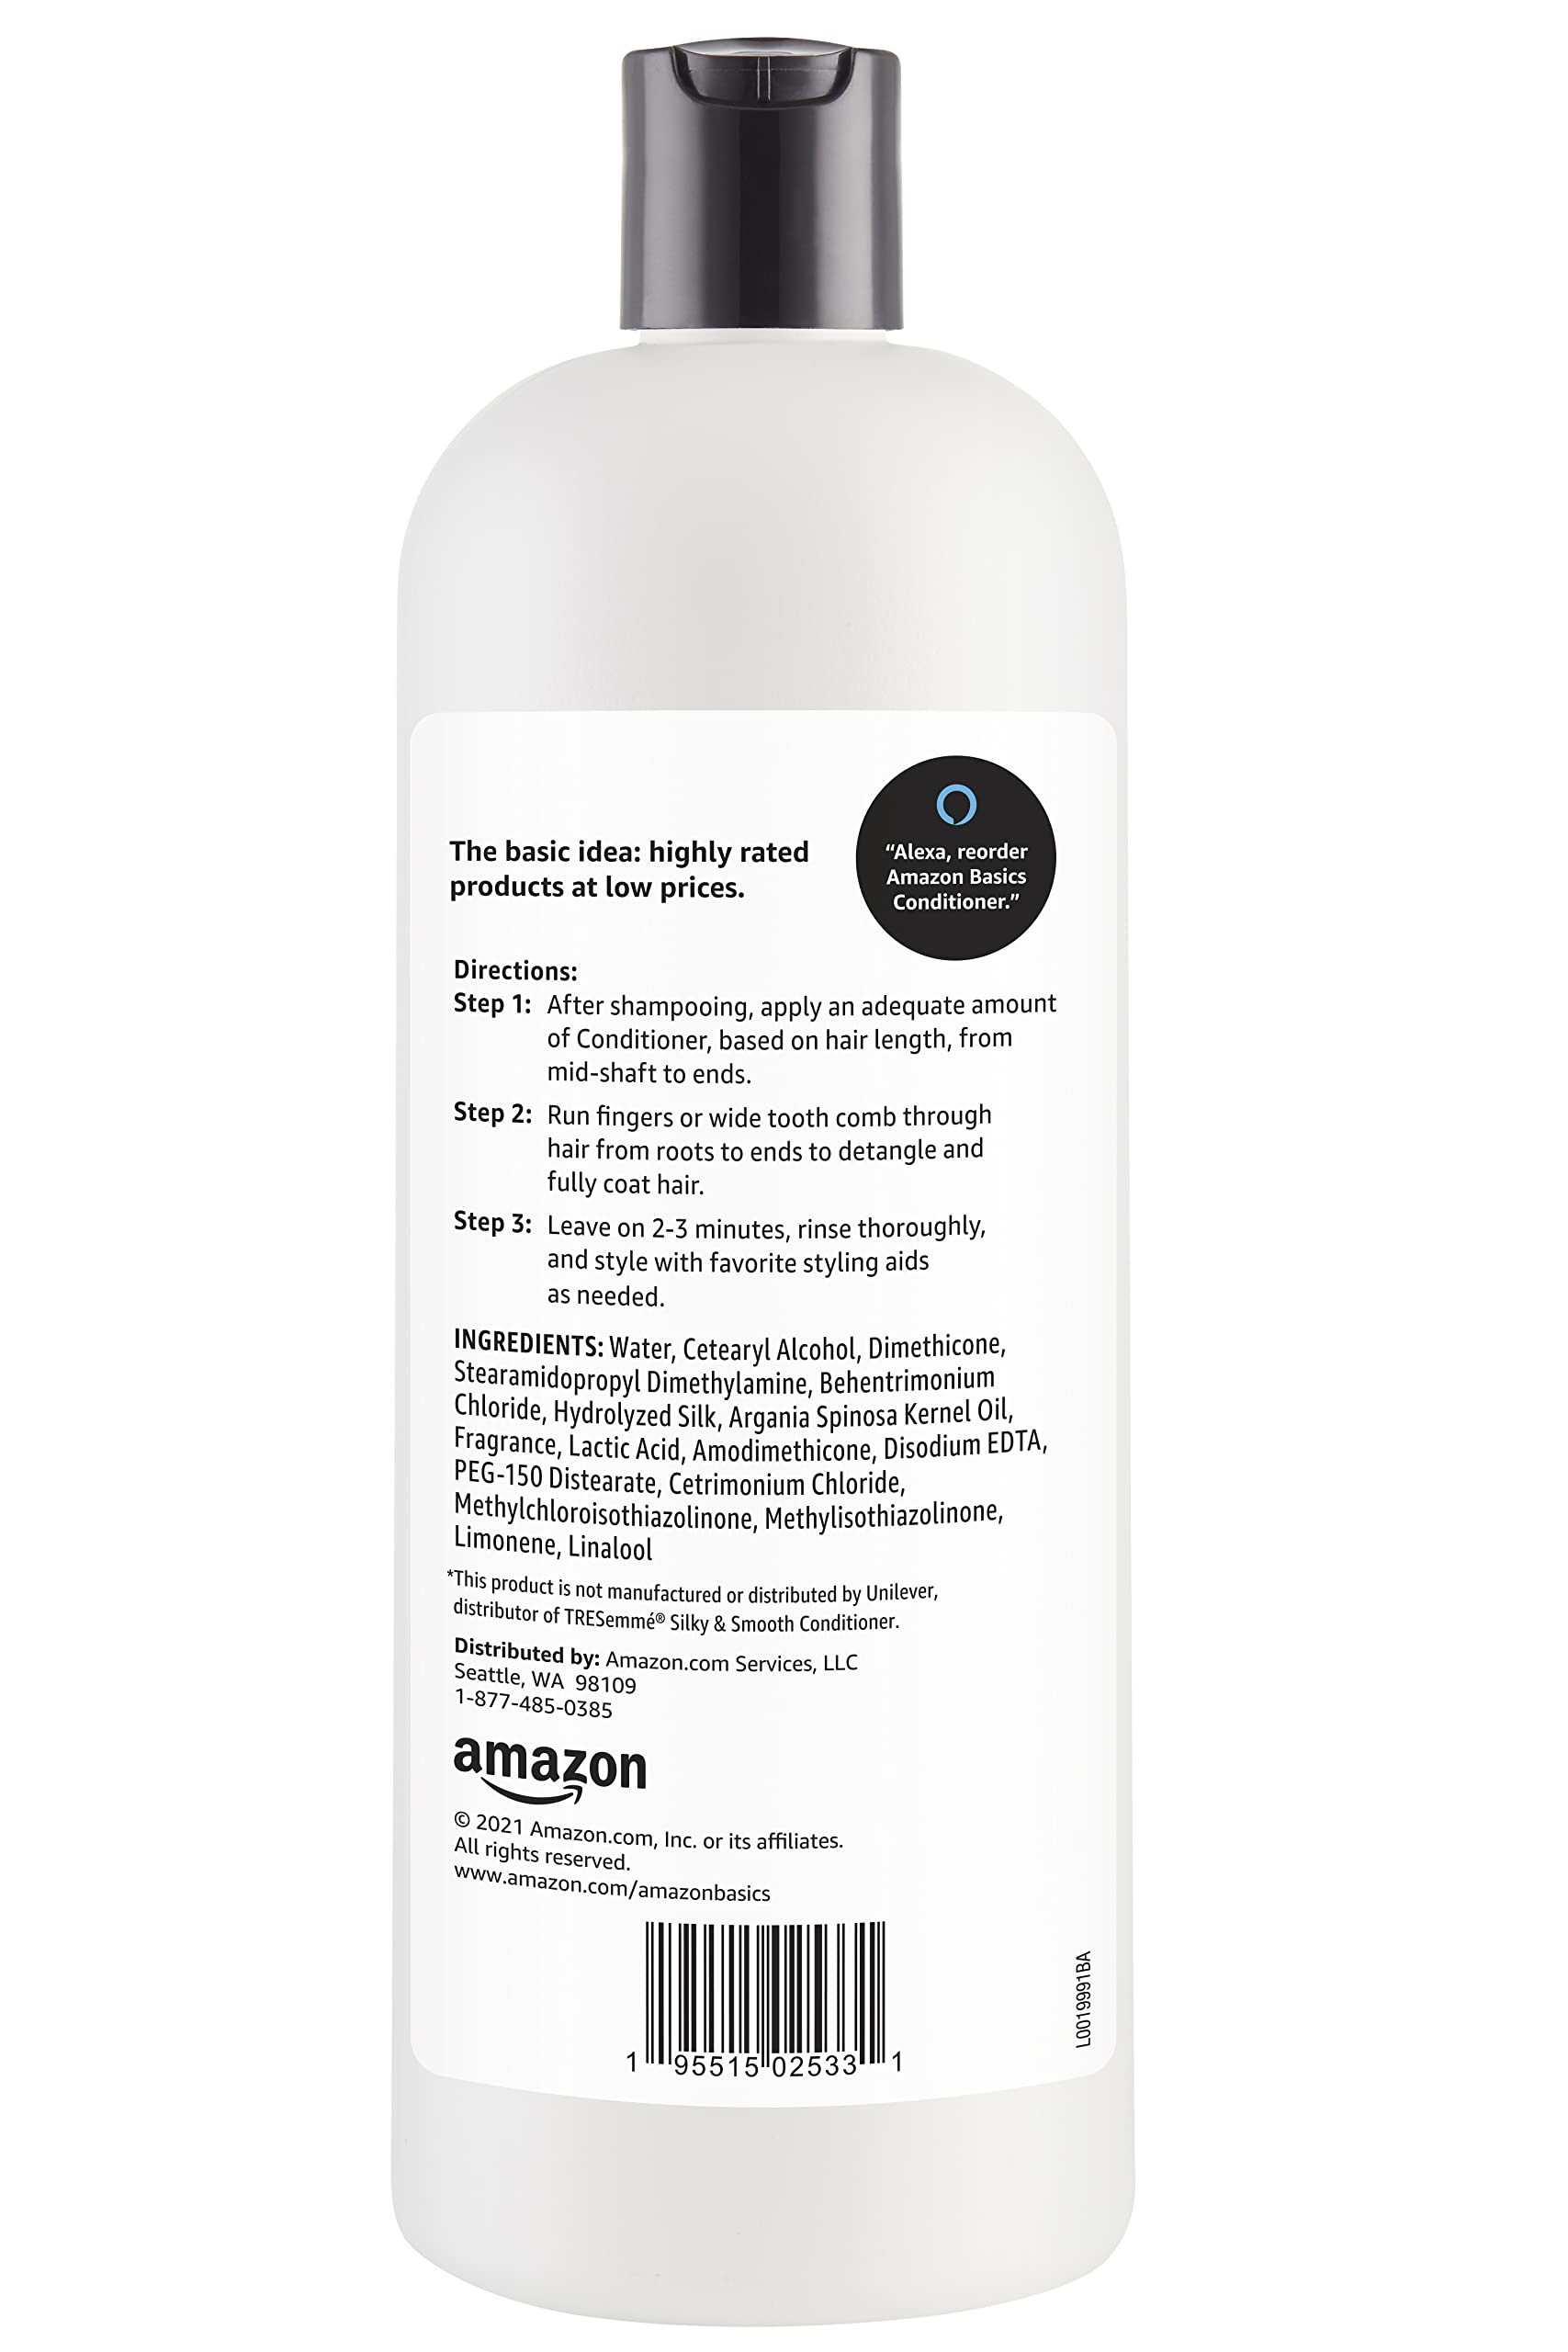 Amazon Basics Soft & Sleek Conditioner for Dry or Damaged Hair, 28 Fluid Ounce